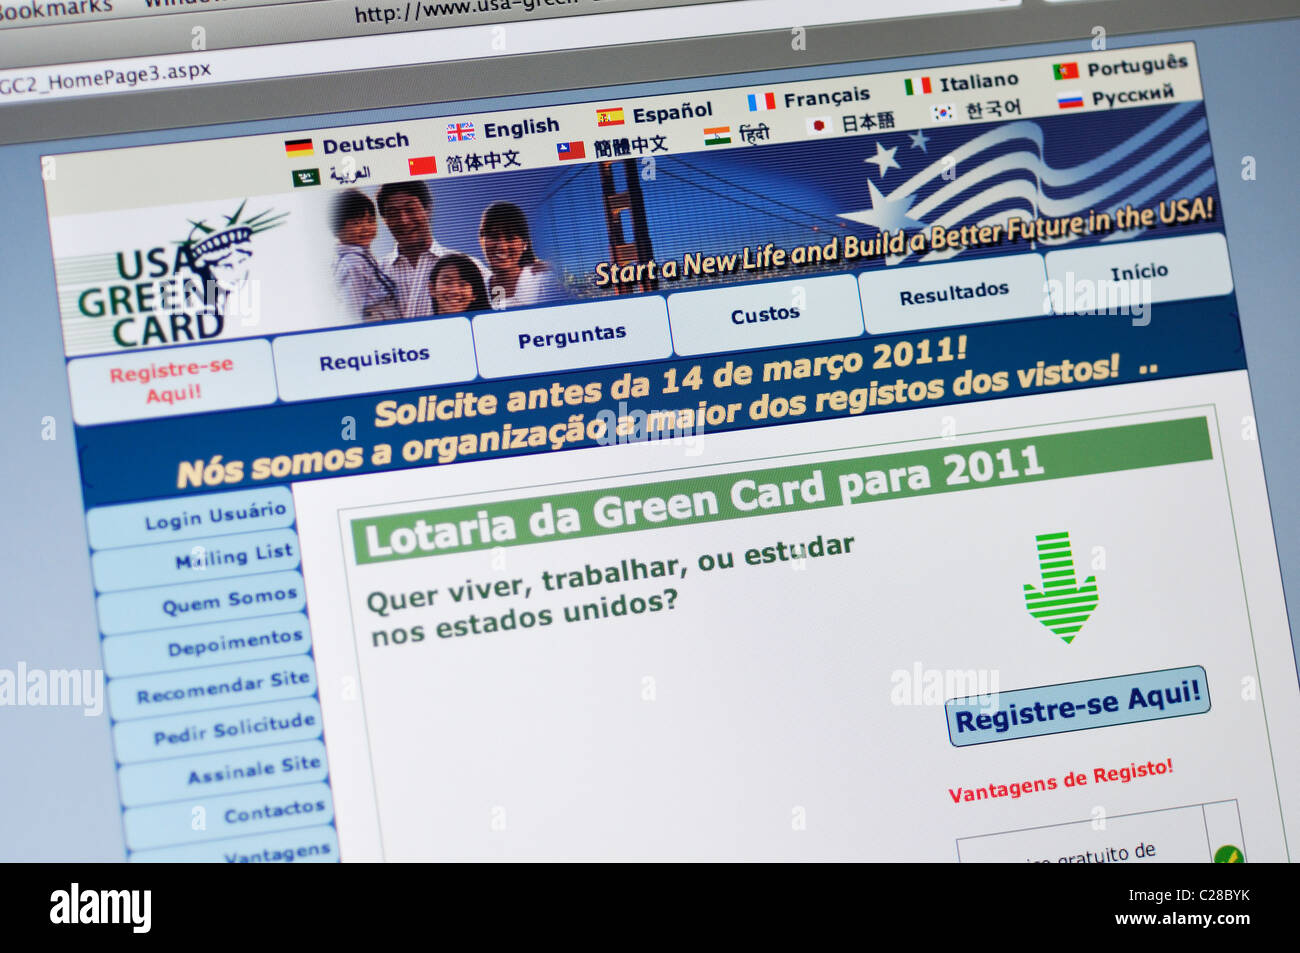 Website der USA Green Card Lotterie - in portugiesischer Sprache Stockfoto